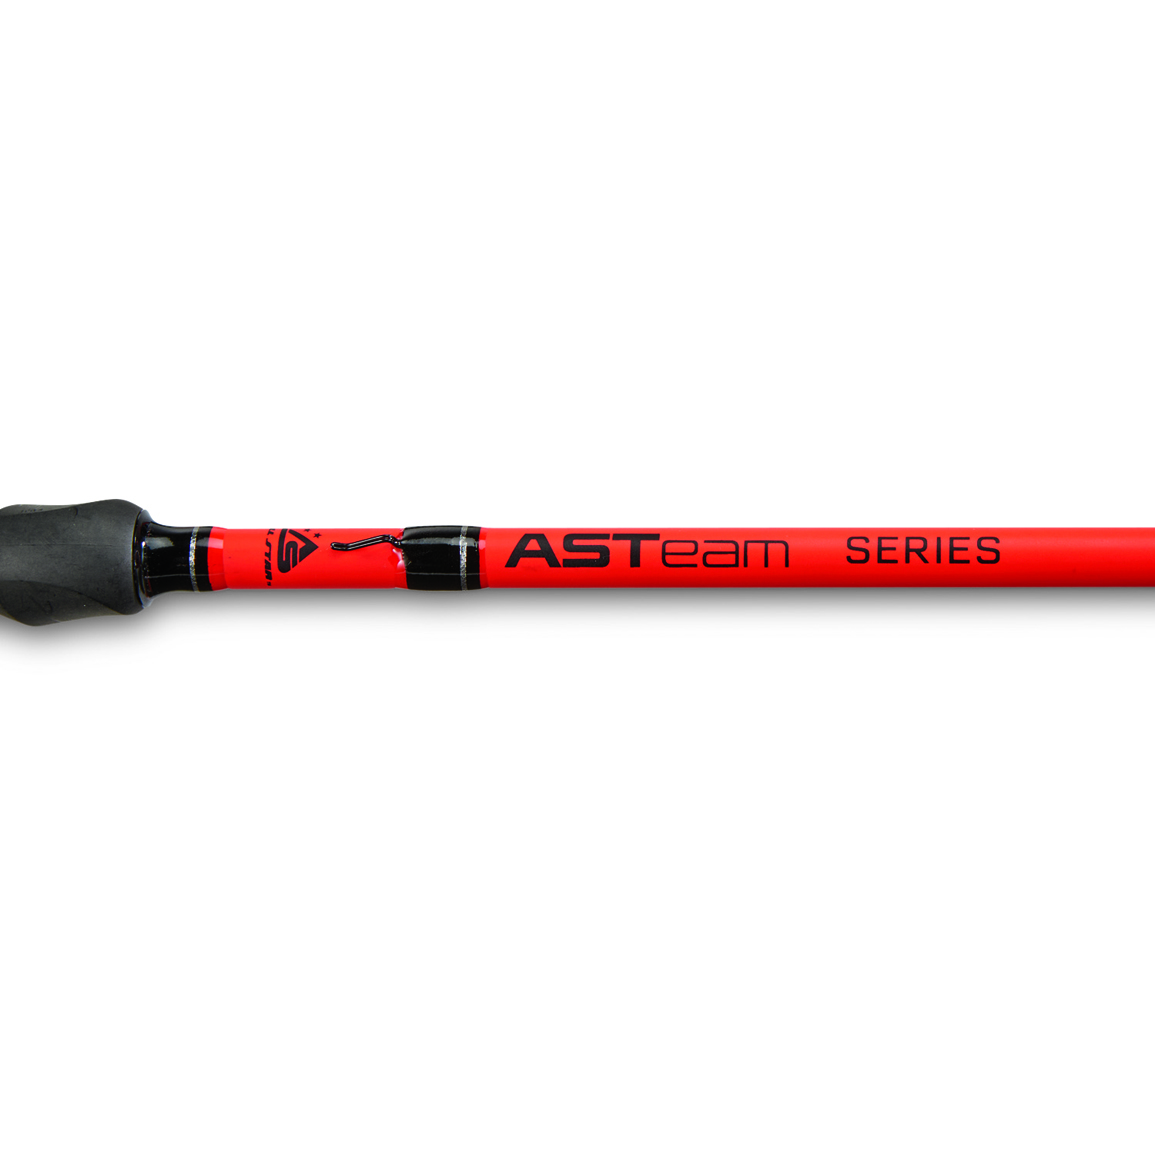 All Star ASTeam Spinning Rod, 6'8" Length, Medium Power, Fast Action